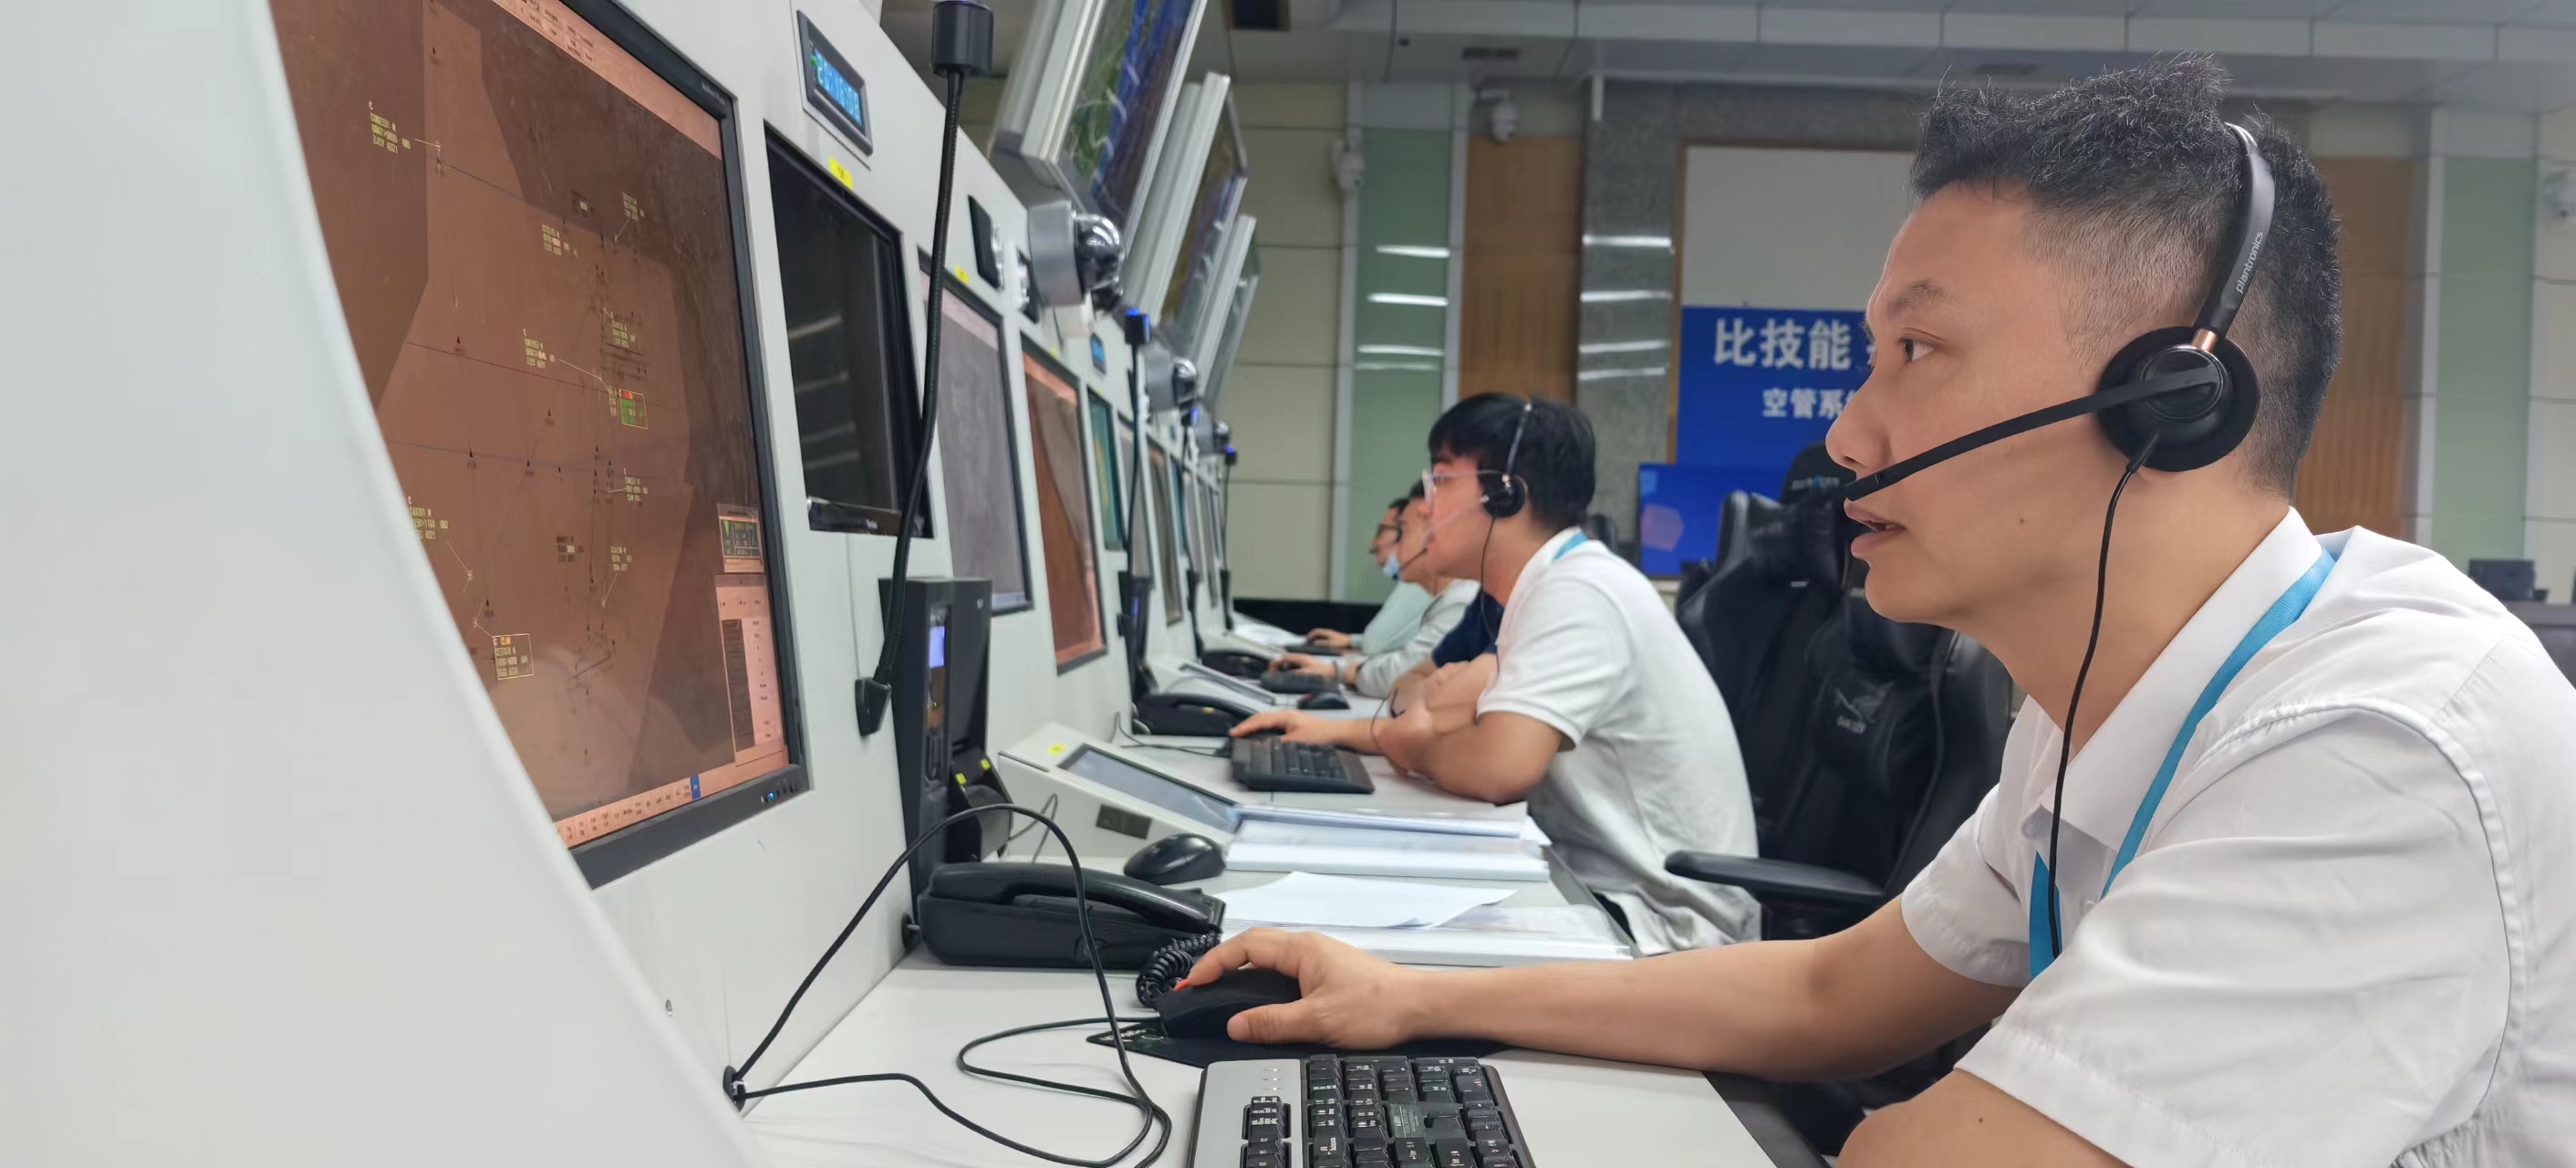 海南空管分局三亚区域管制中心组织开展“陆空通信失效通用程序”专项培训